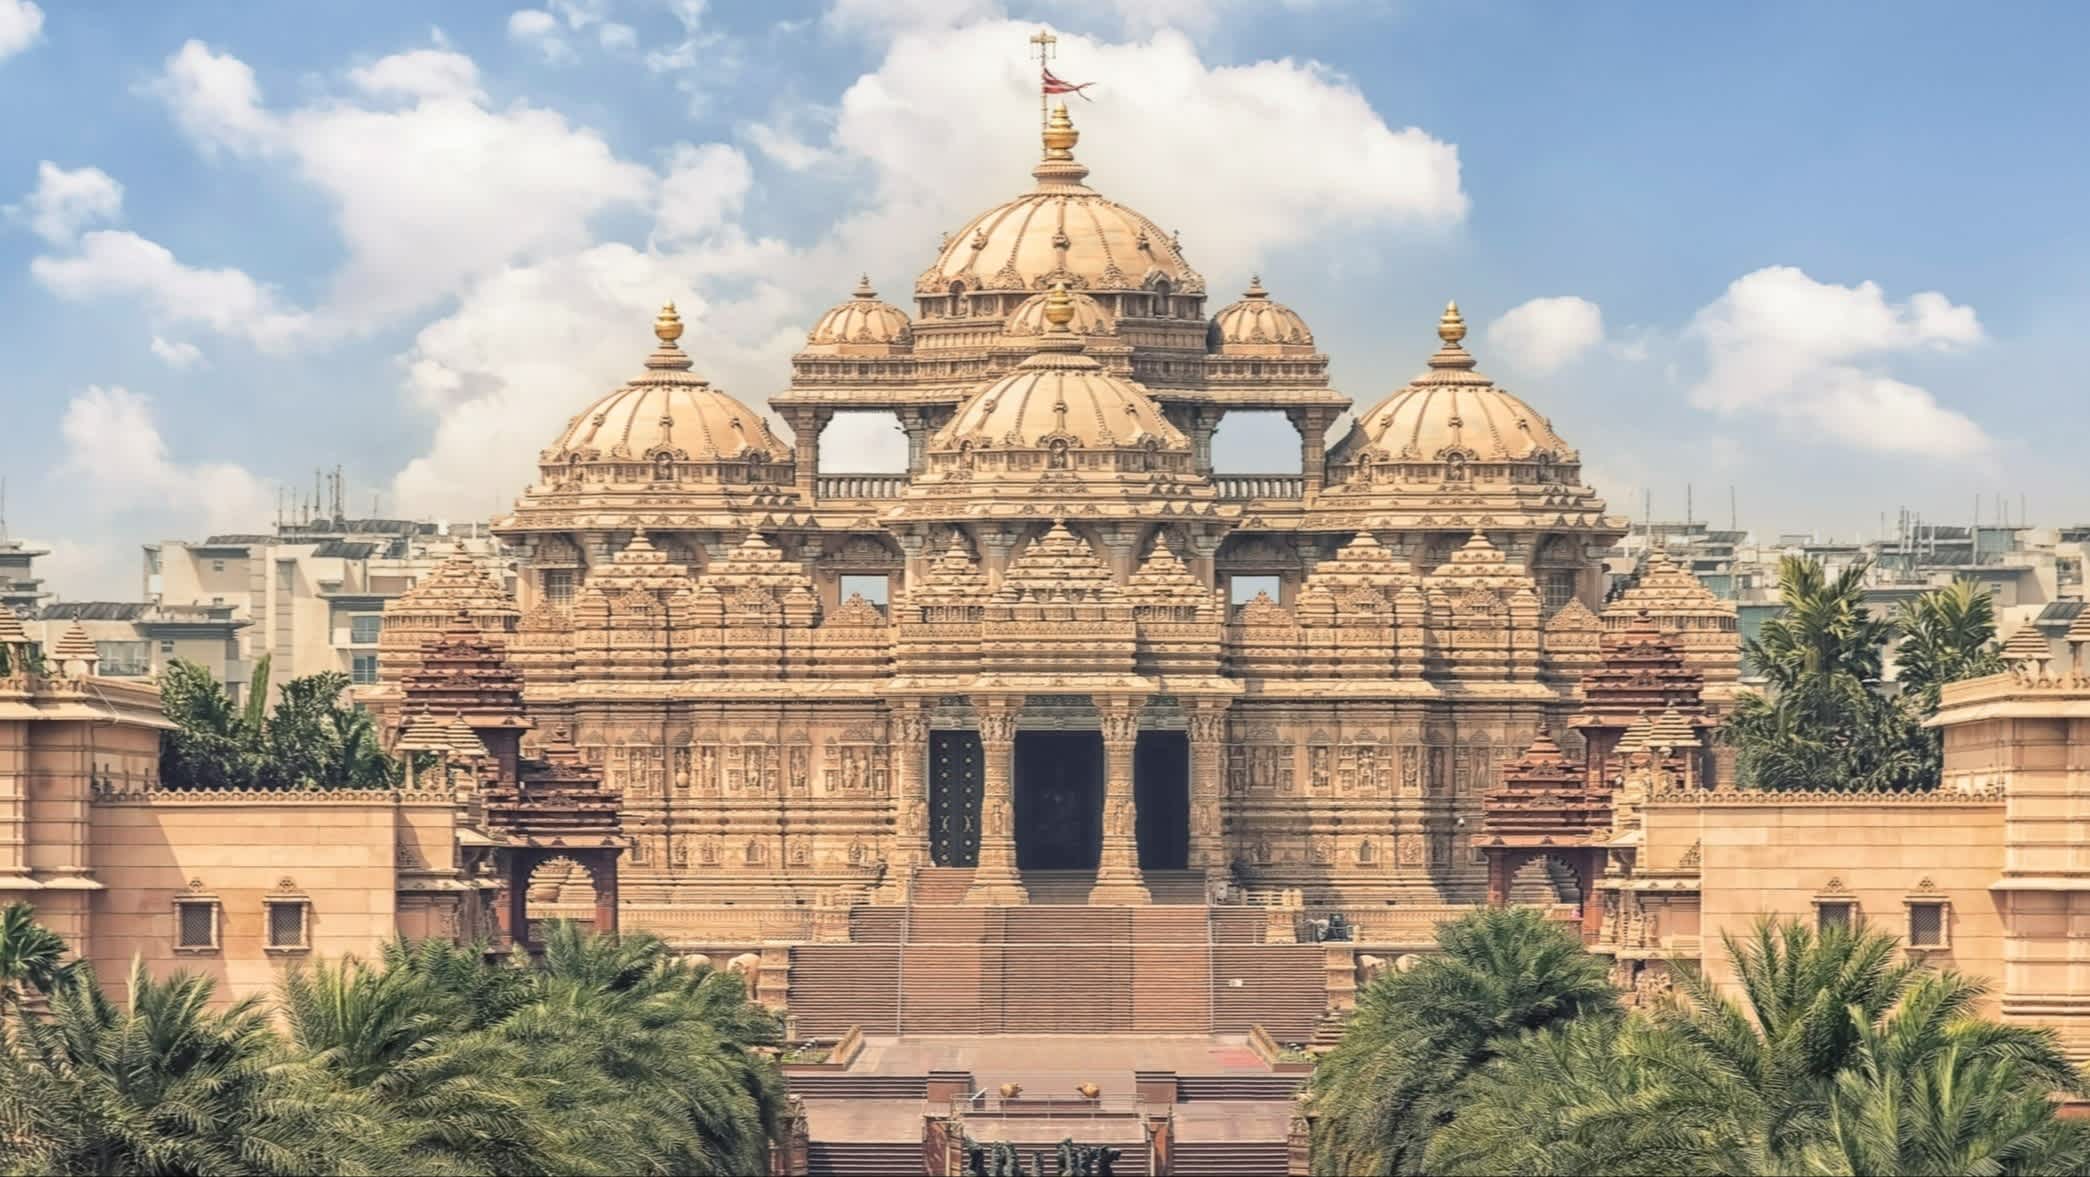 Vue de l'extérieur du temple hindou Akshardham à New Delhi, Inde

